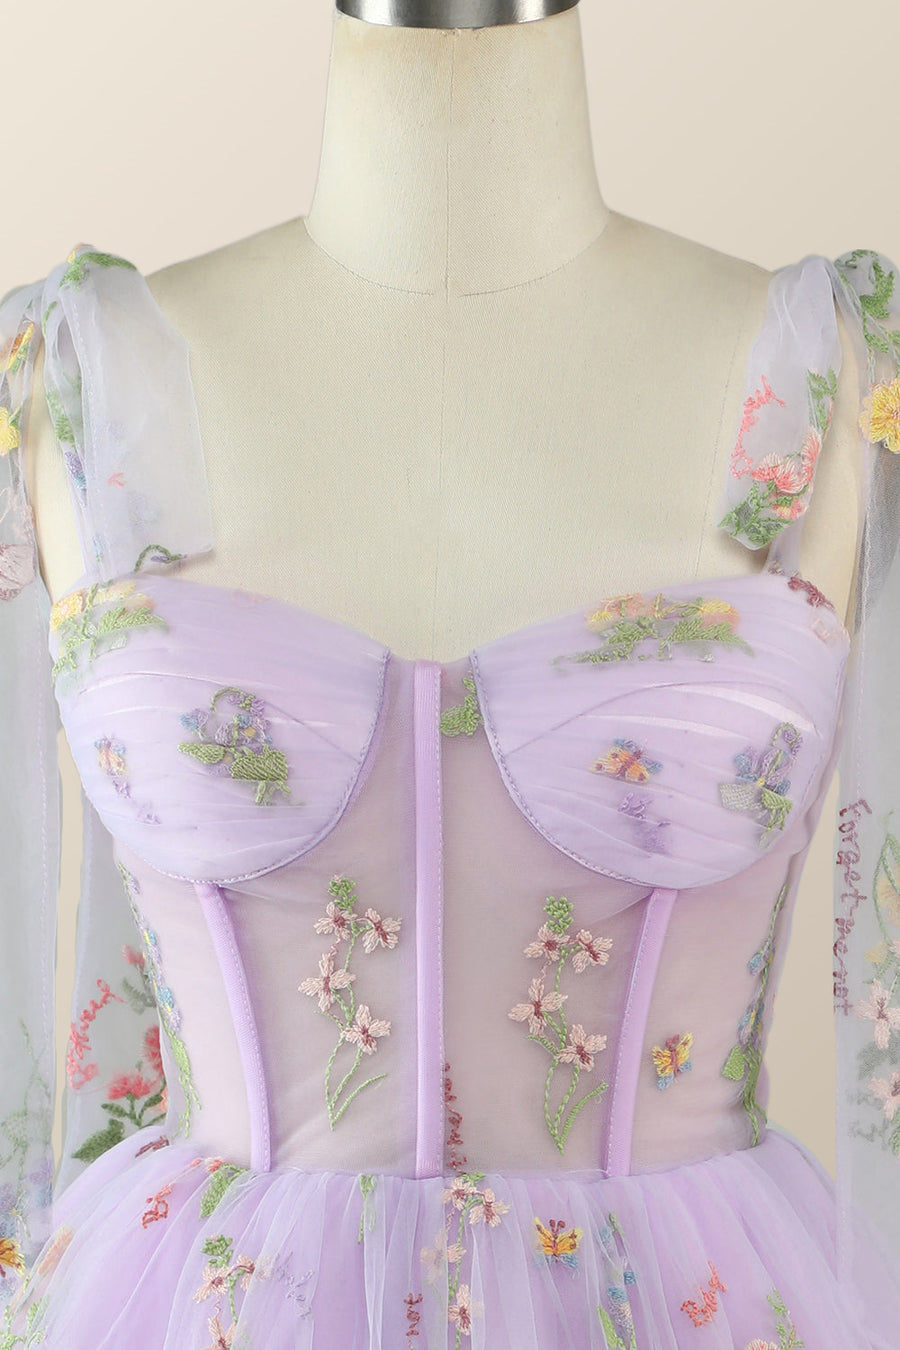 Lavender Floral Corset A-line Princess Dress